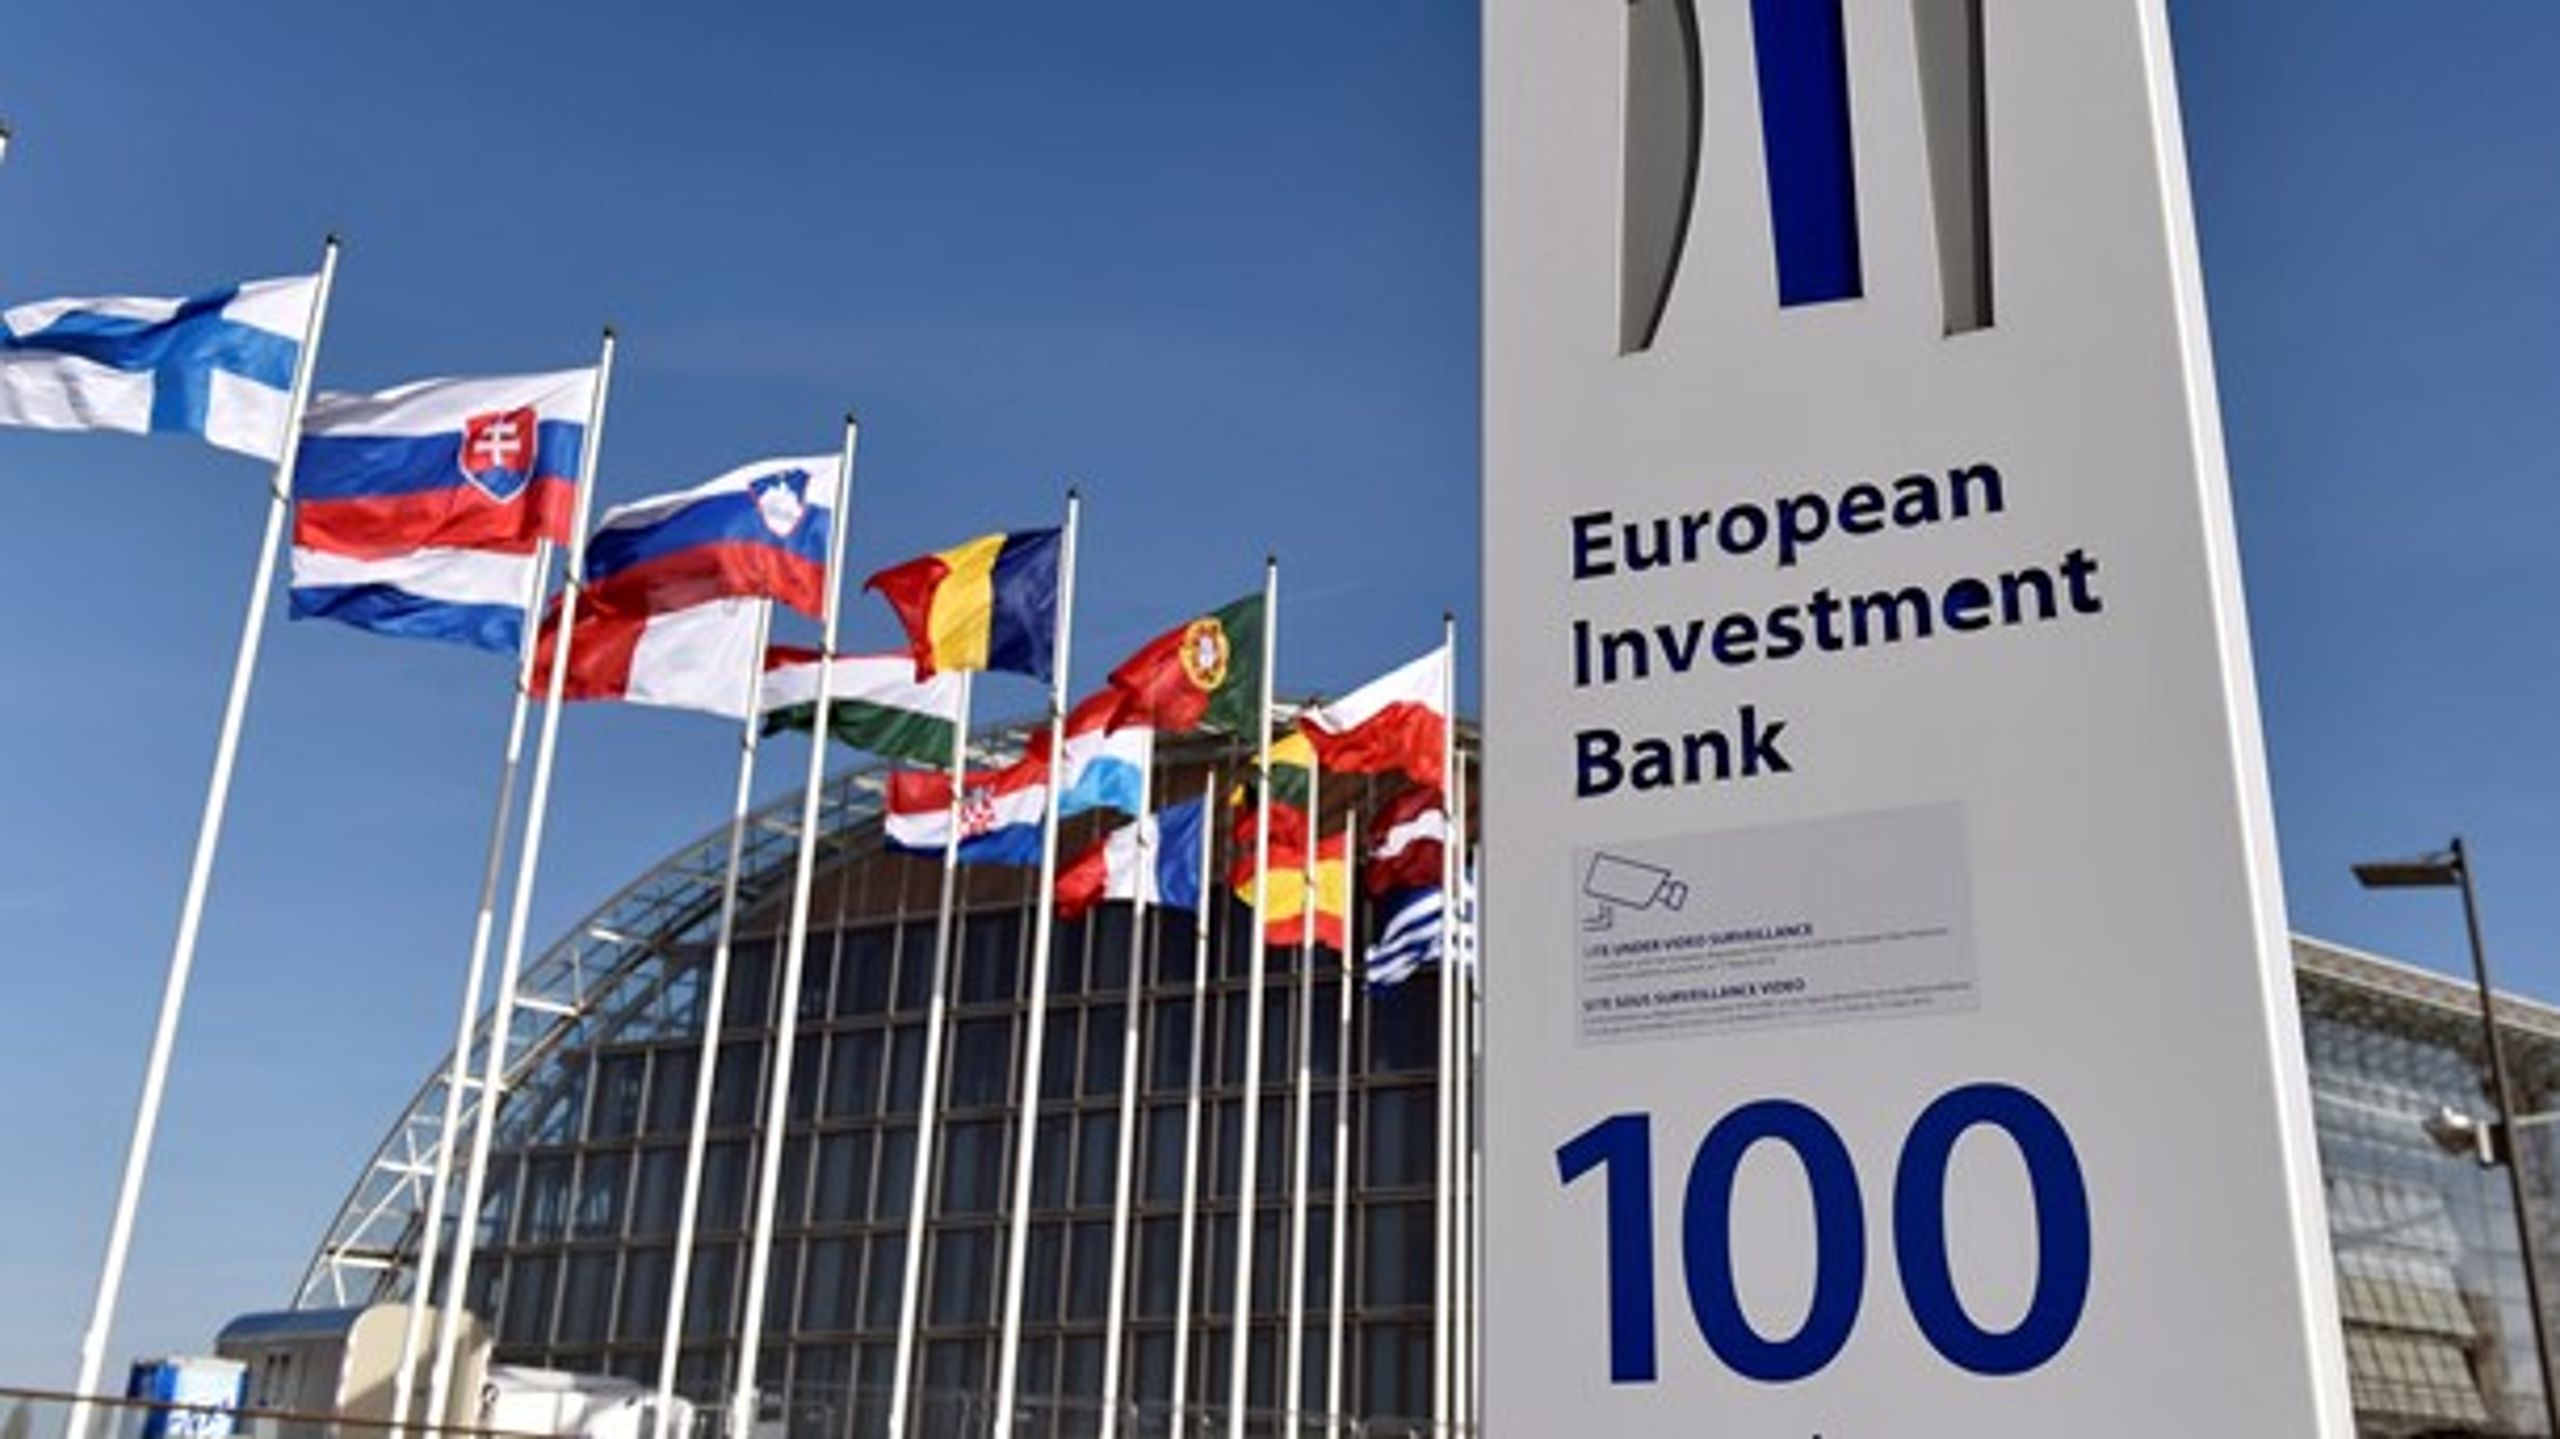 Den Europæiske Investeringsbank udfaser udlån til olie- og gasprojekter med udgangen af 2021. Banken ejes af EU-landene og skal blandt andet afbøde klimaændringerne.